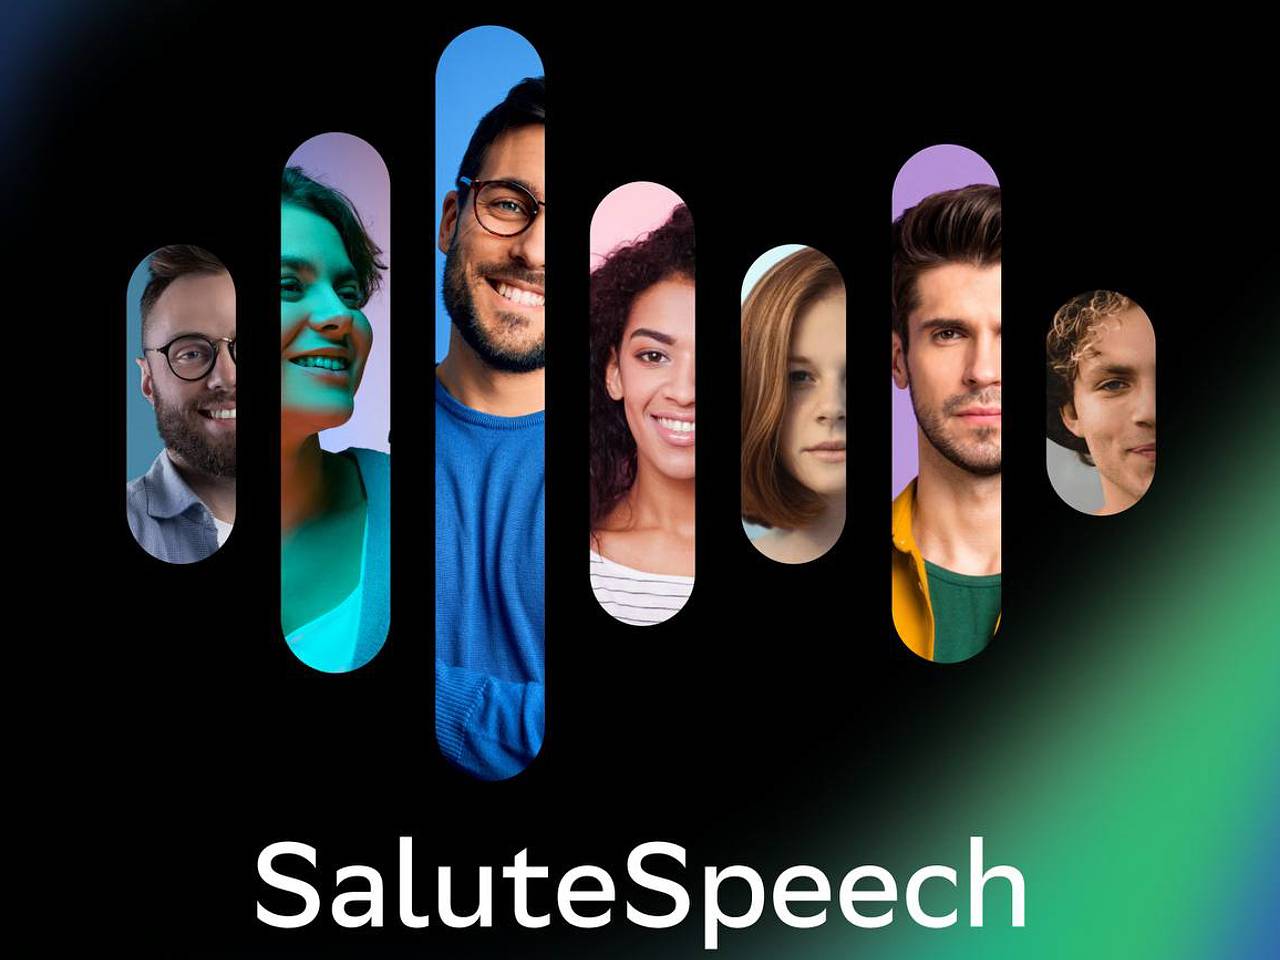 Сбер открыл доступ для всех к платформе синтеза и распознавания речи SaluteSpeech